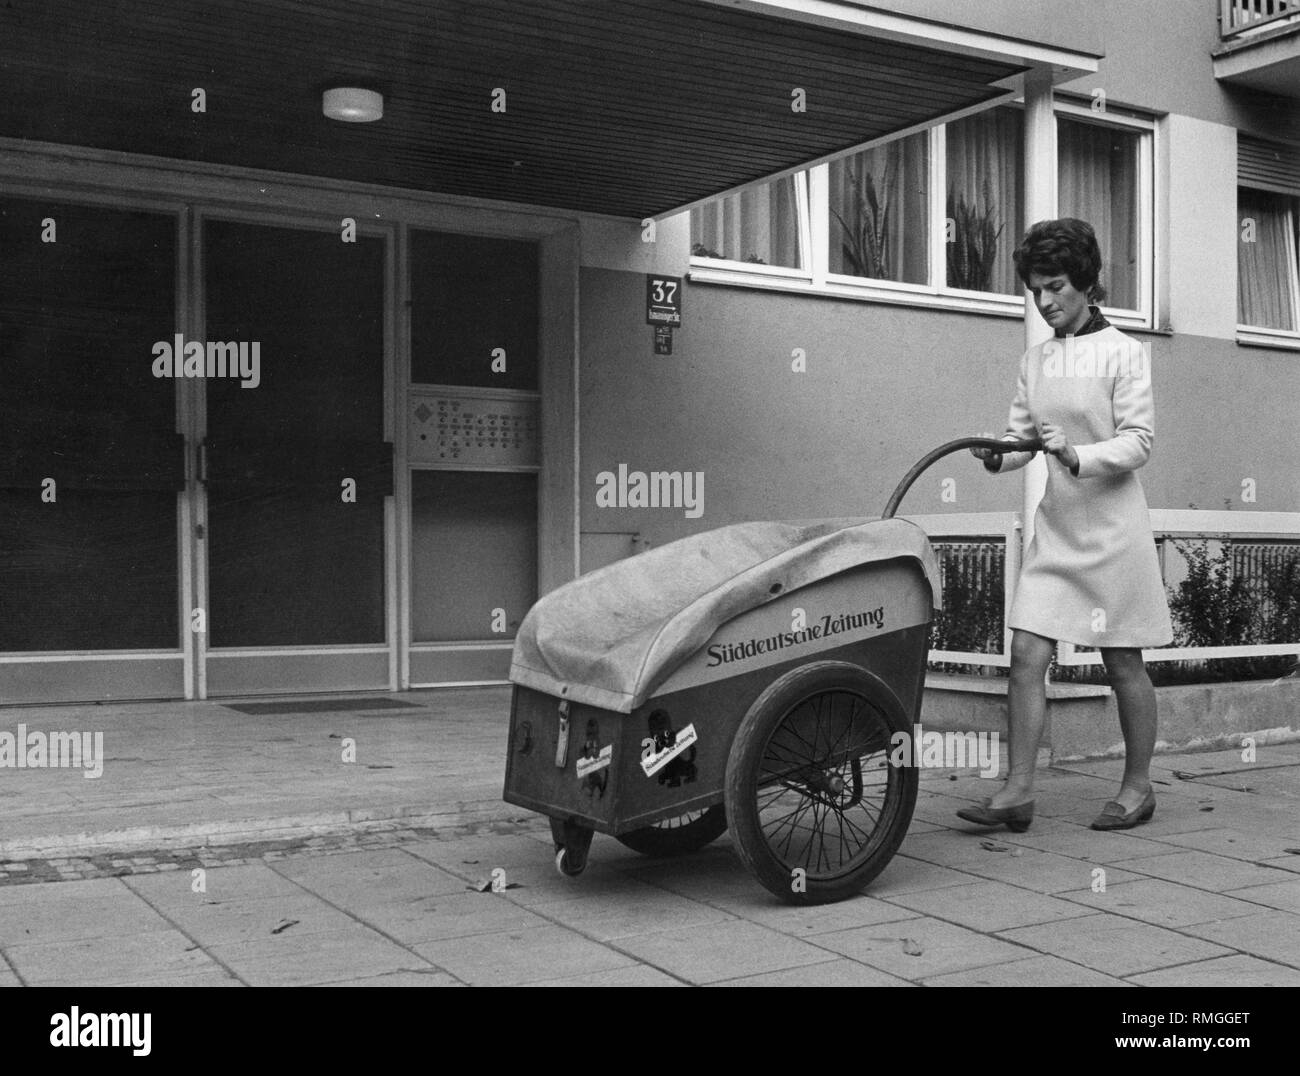 A newspaper carrier of the Sueddeutsche Zeitung with her car in the Ismaningerstrasse in Munich (undated shot). Stock Photo